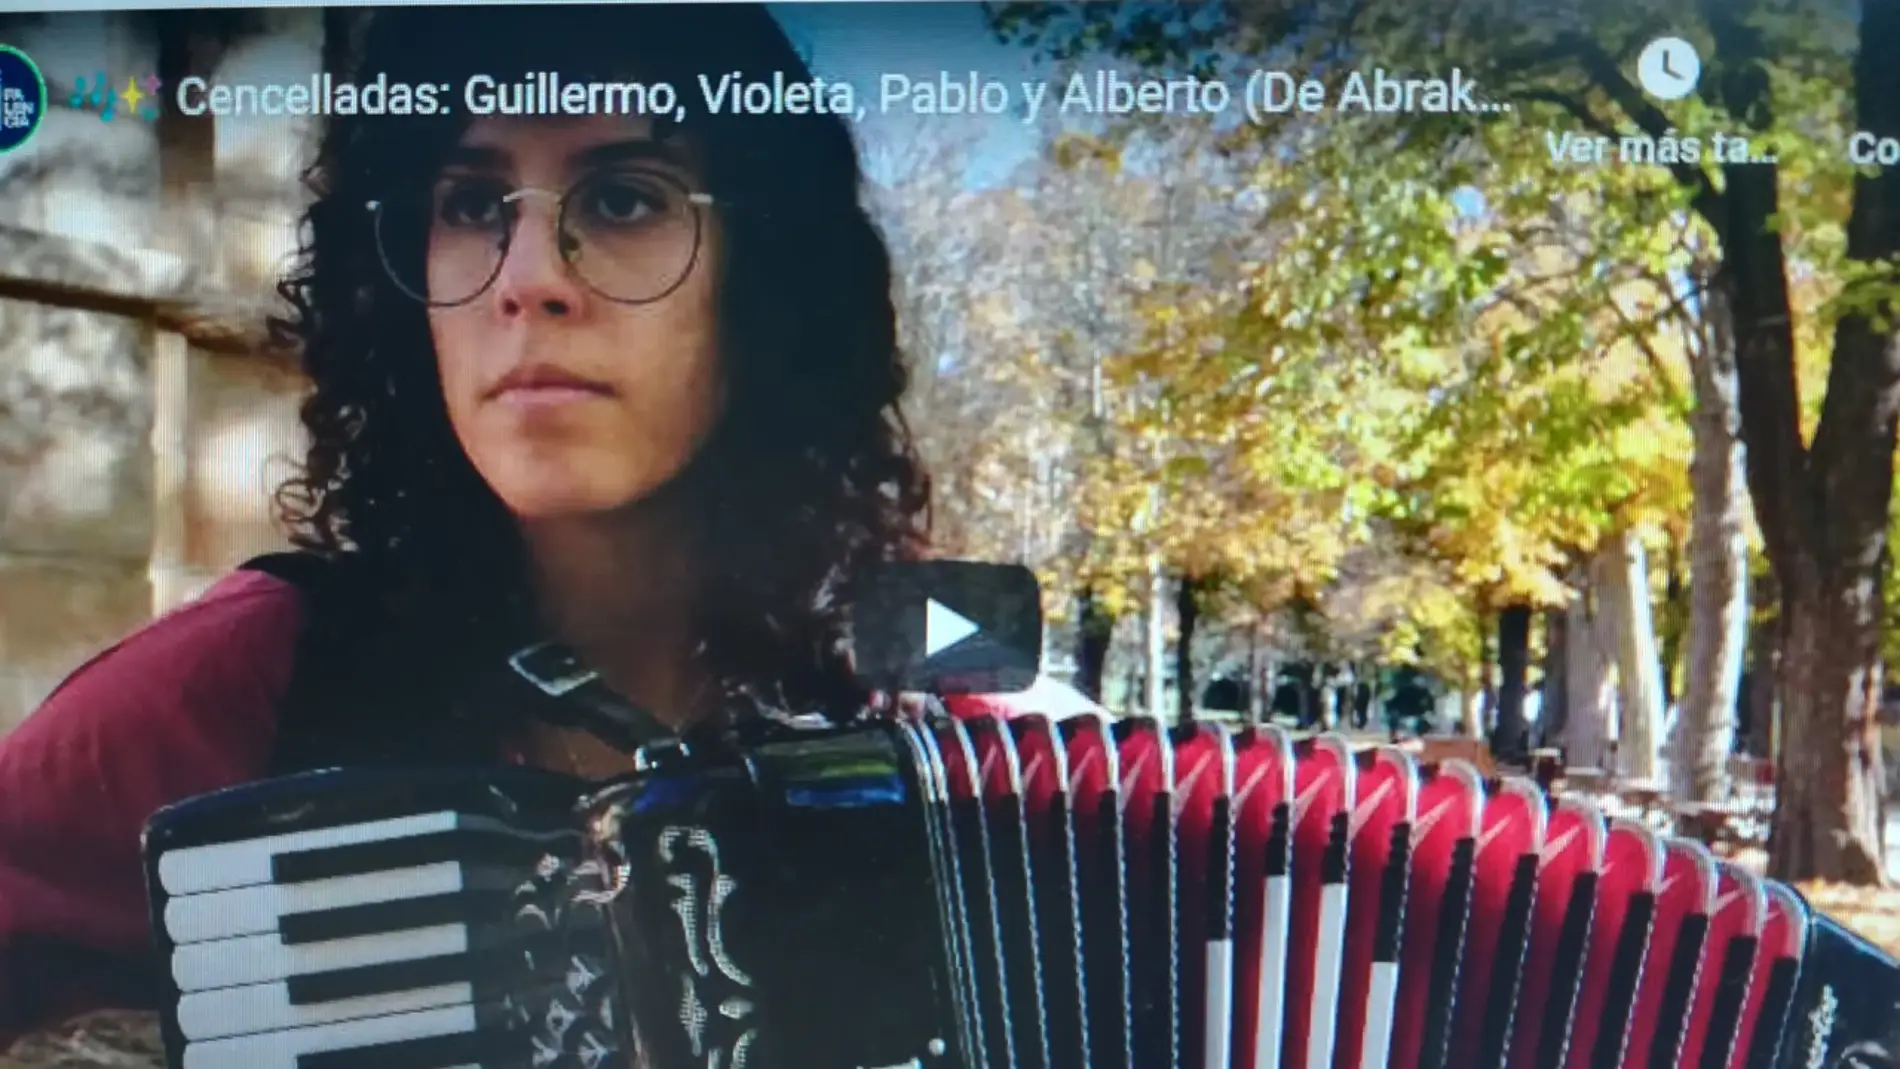 Vídeos musicales de artistas palentinos para disfrutar durante la Navidad